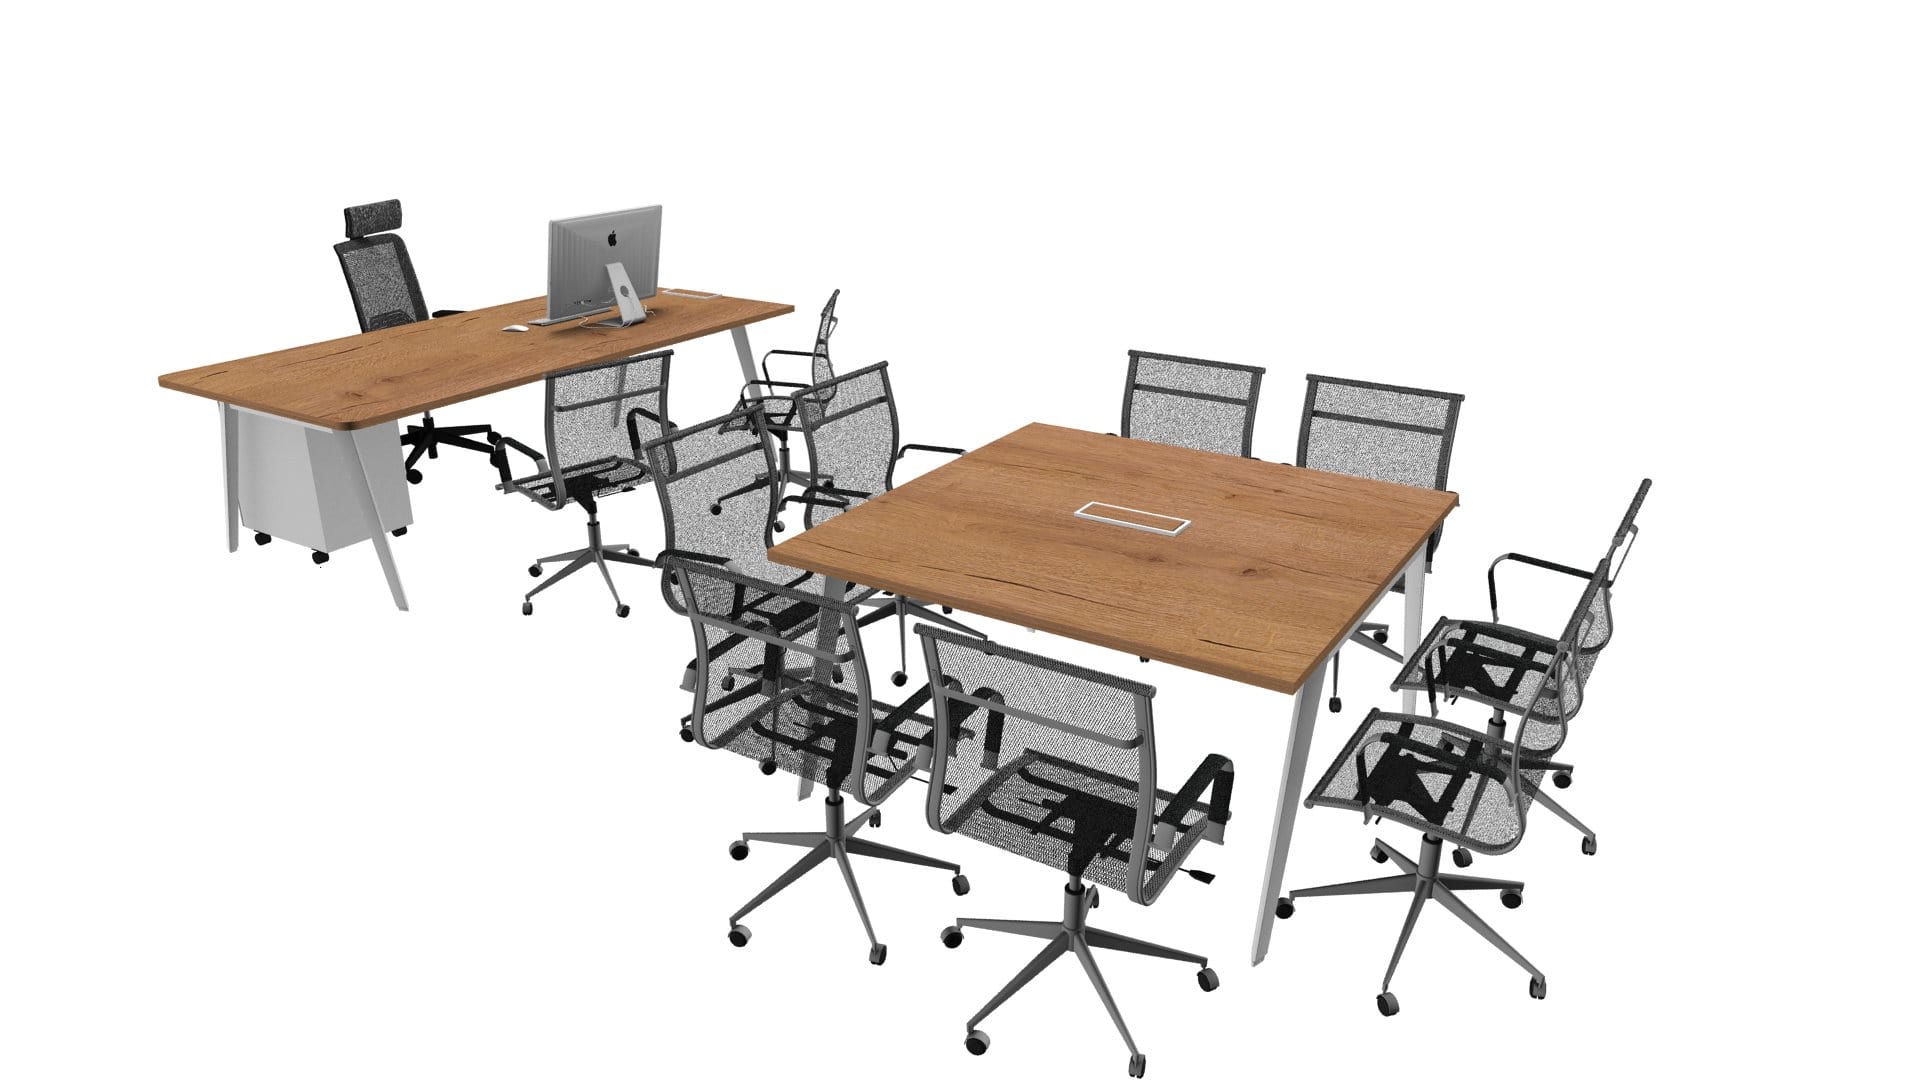 Combe_Diseño_Render mesas de trabajo o reuniones informales